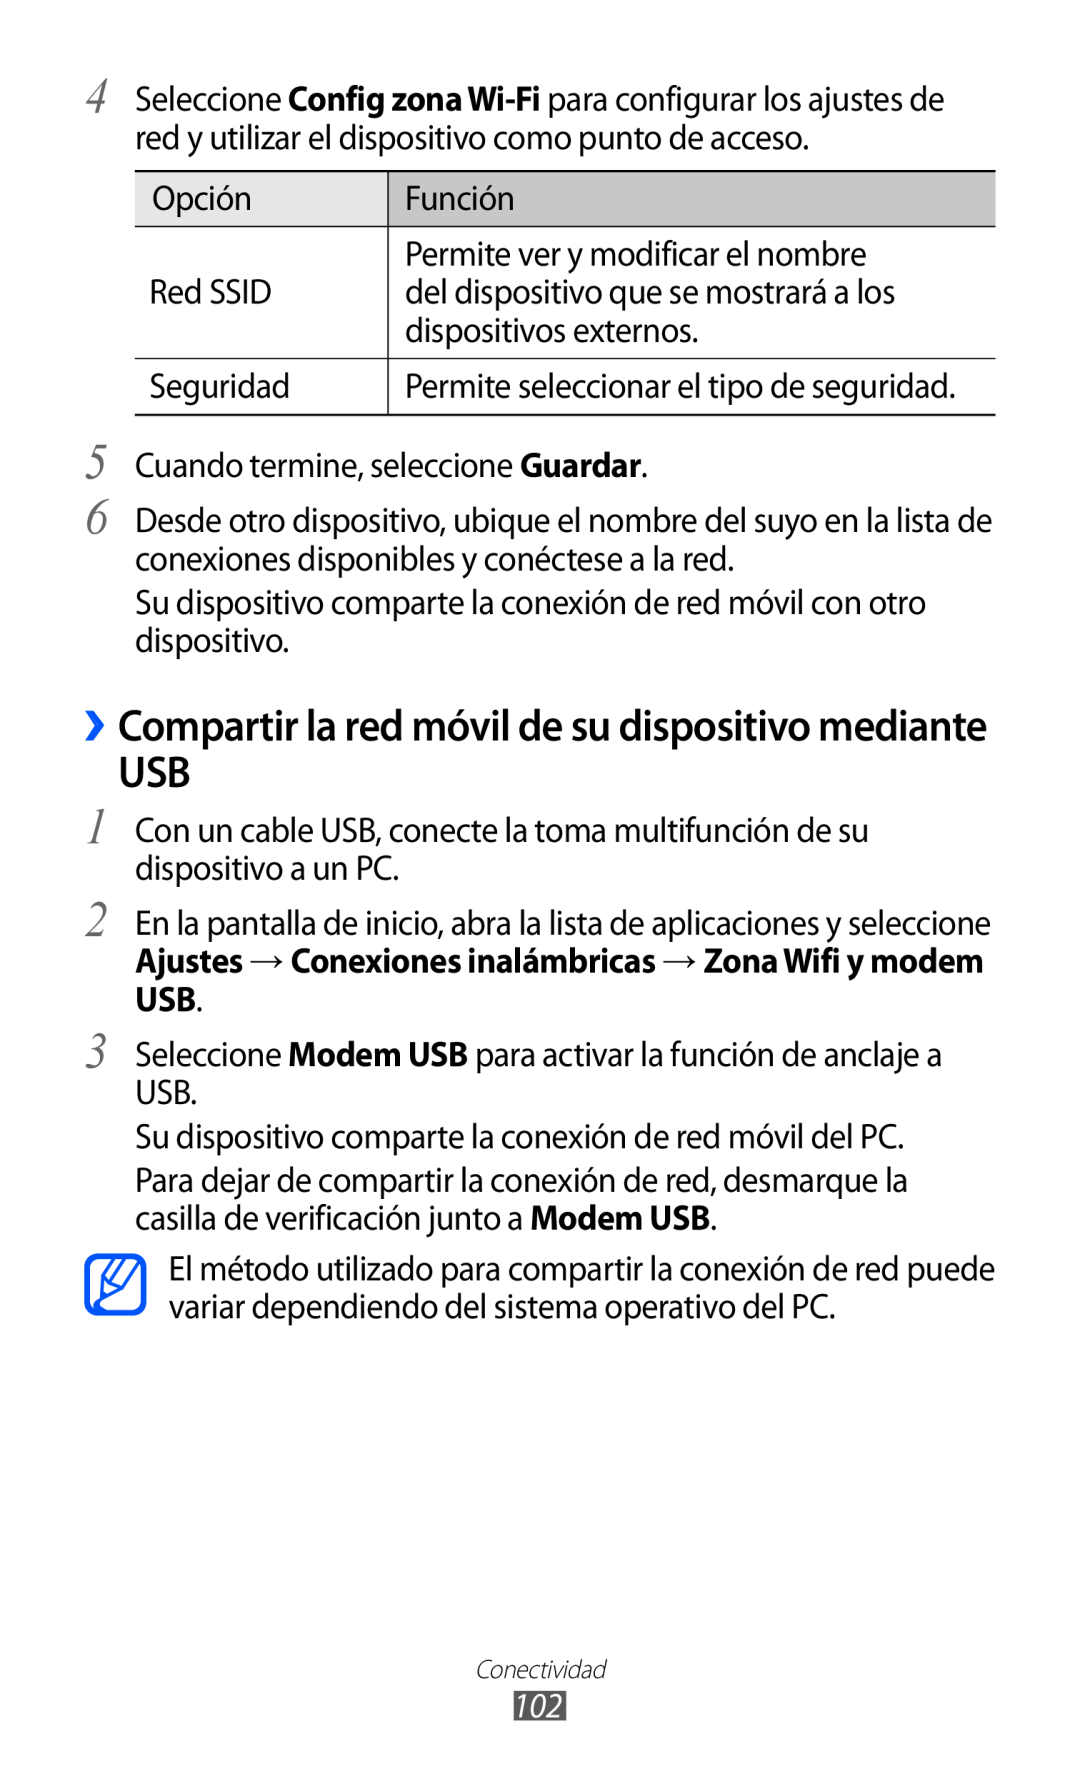 Samsung GT-S6500ZYDVDP manual ››Compartir la red móvil de su dispositivo mediante, Permite seleccionar el tipo de seguridad 